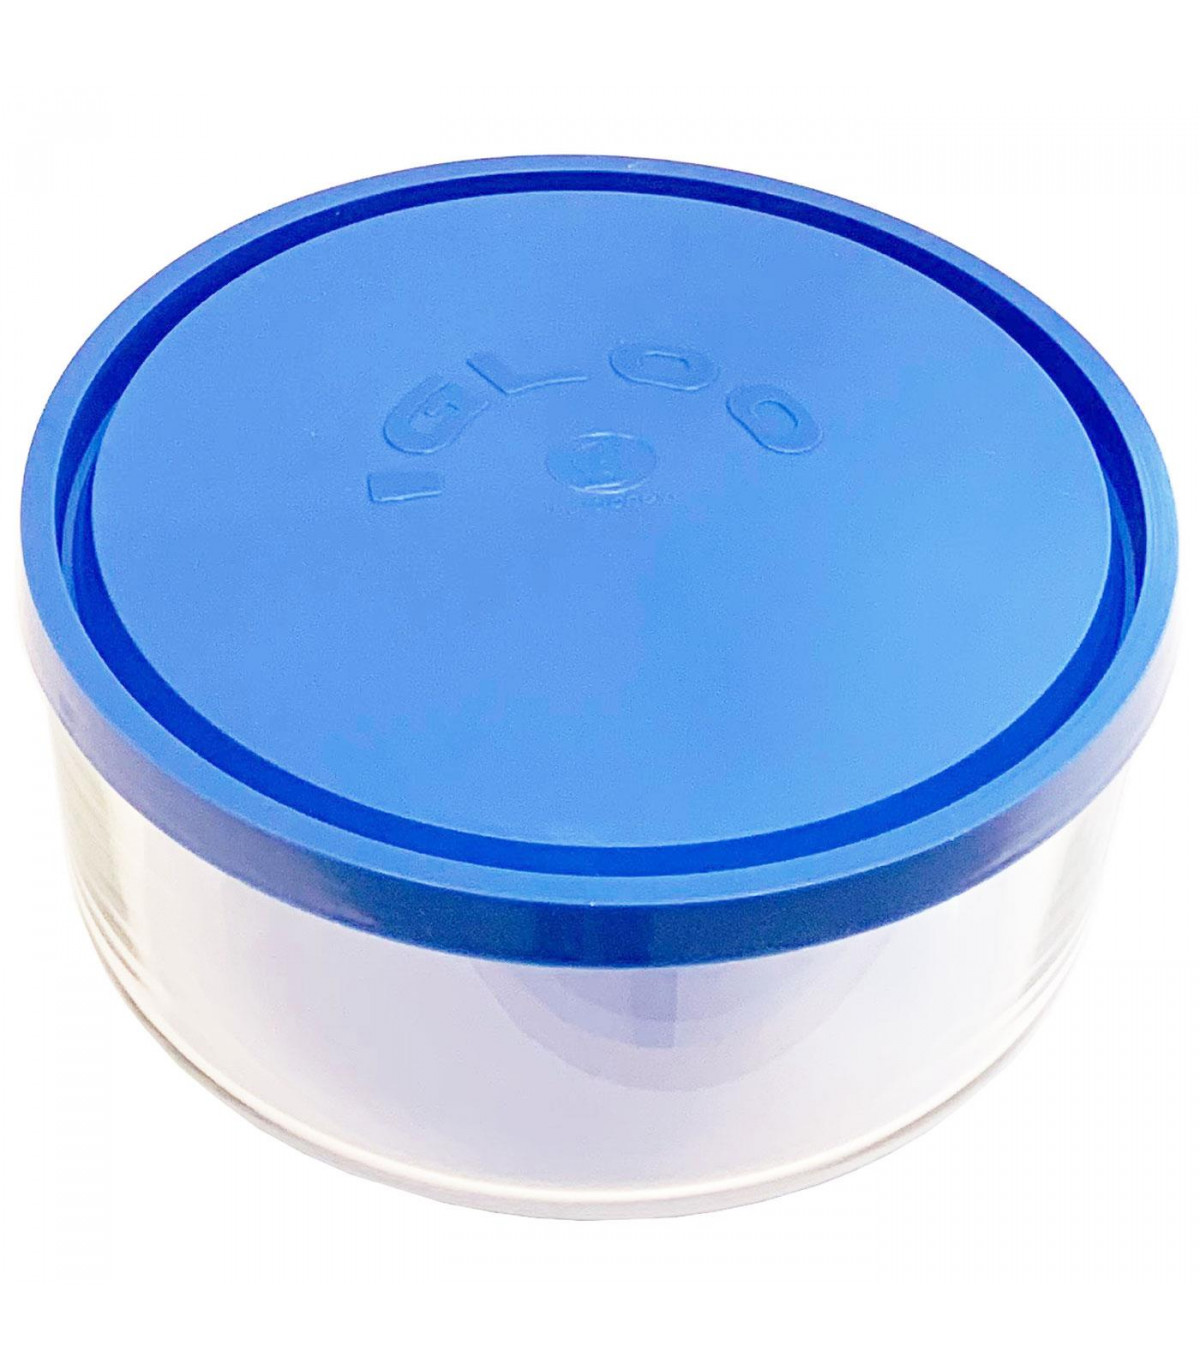 Fiambrera redonda cristal tapa de plástico 18 cm. Recipiente de vidrio para  alimentos apto para lavavajillas, microondas y conge